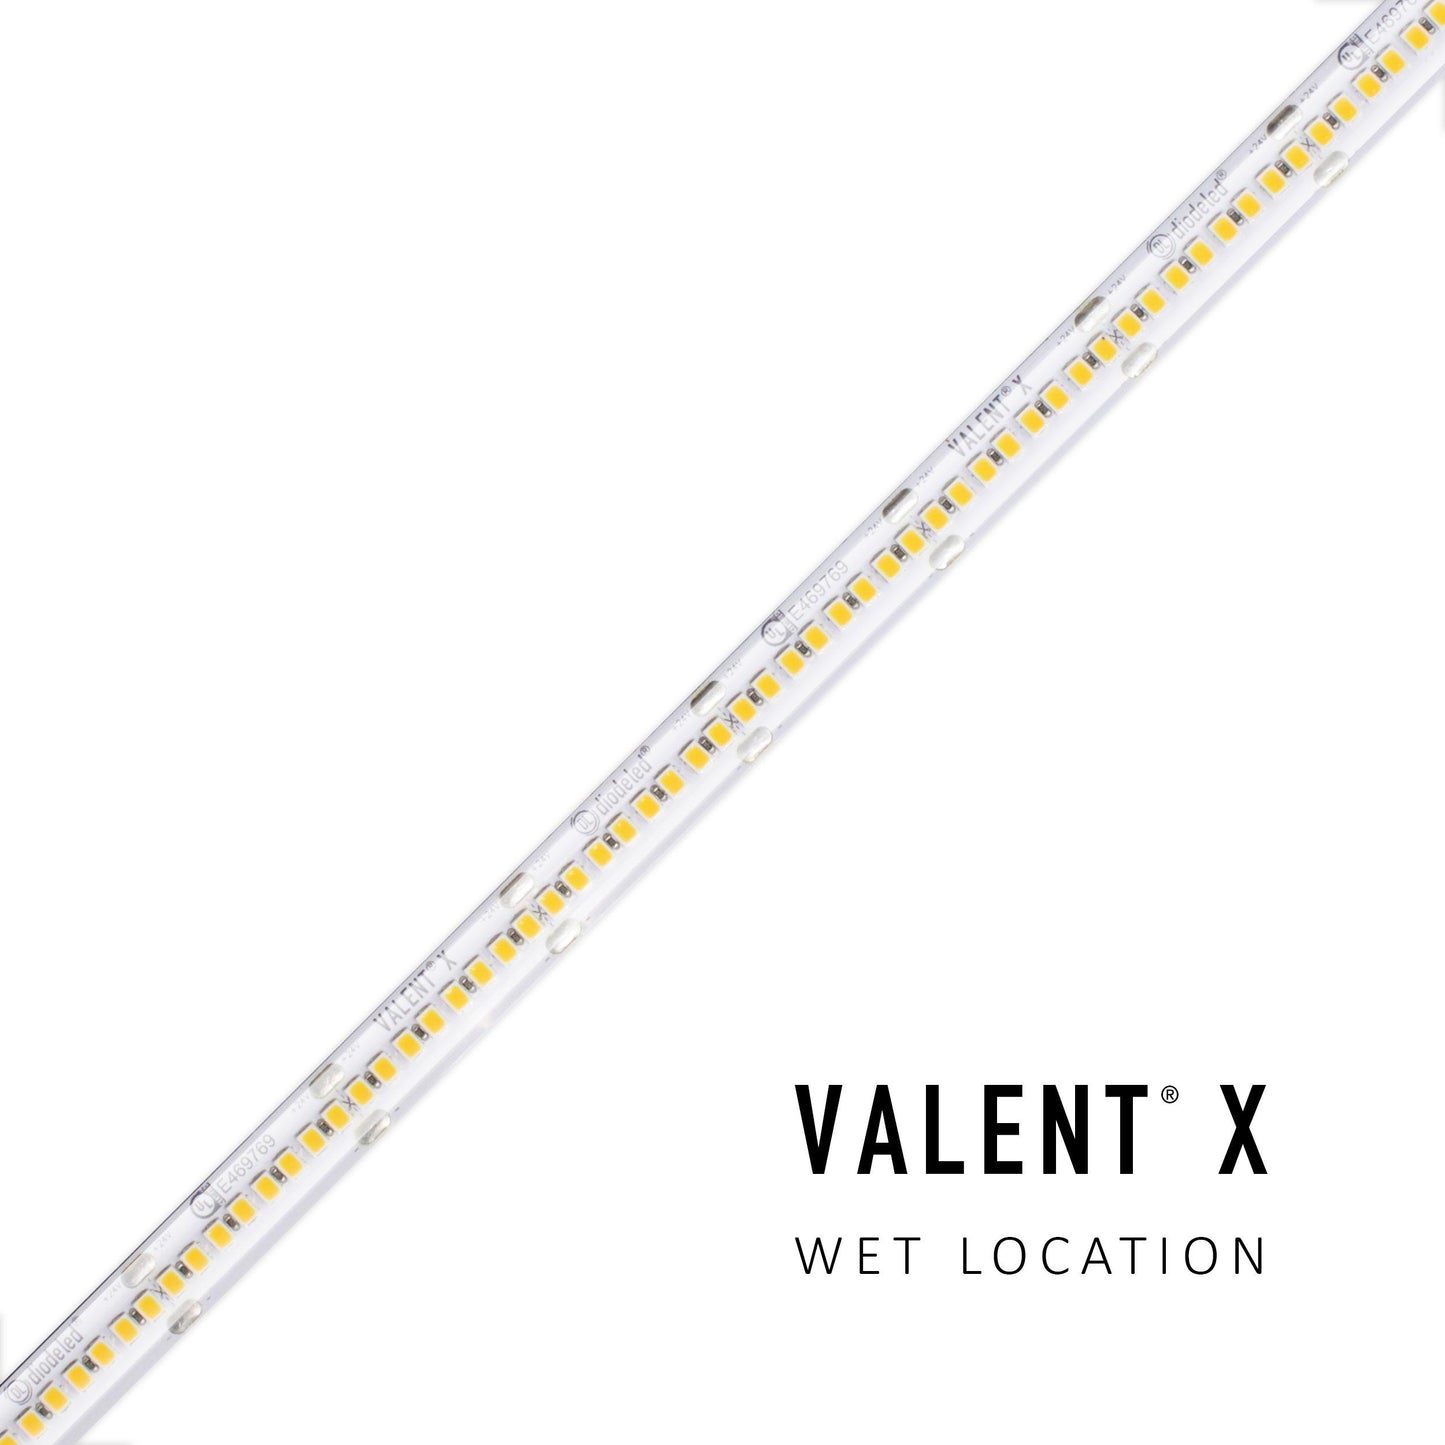 Diode LED DI-24V-VLX5-40-W100 100ft 4.6W/ft Valent X 500+ Lumen Per Ft Wet Location High Density LED Tape Light 4000K 24V DC